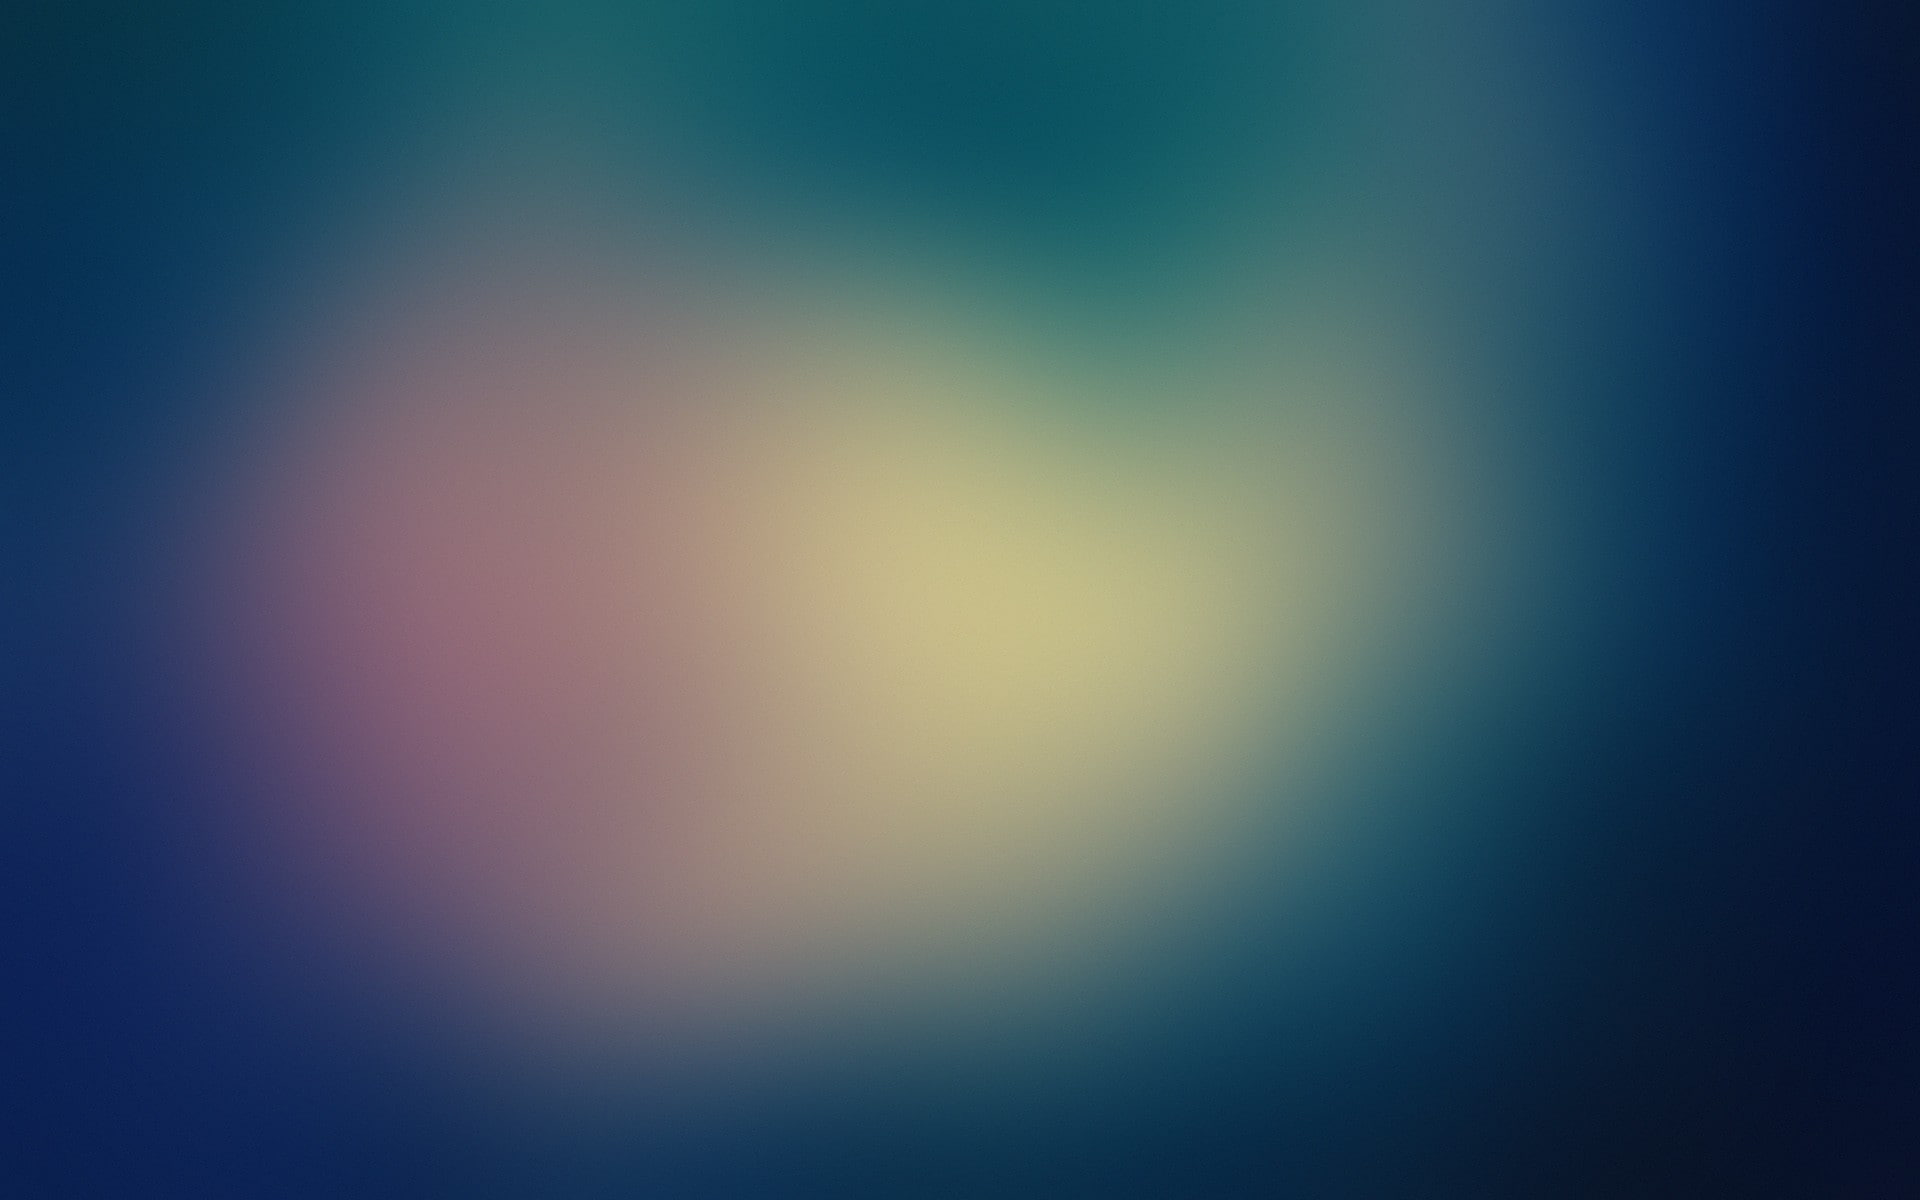 abstract minimalistic placebo gaussian blur blurred Art Minimalistic HD Art